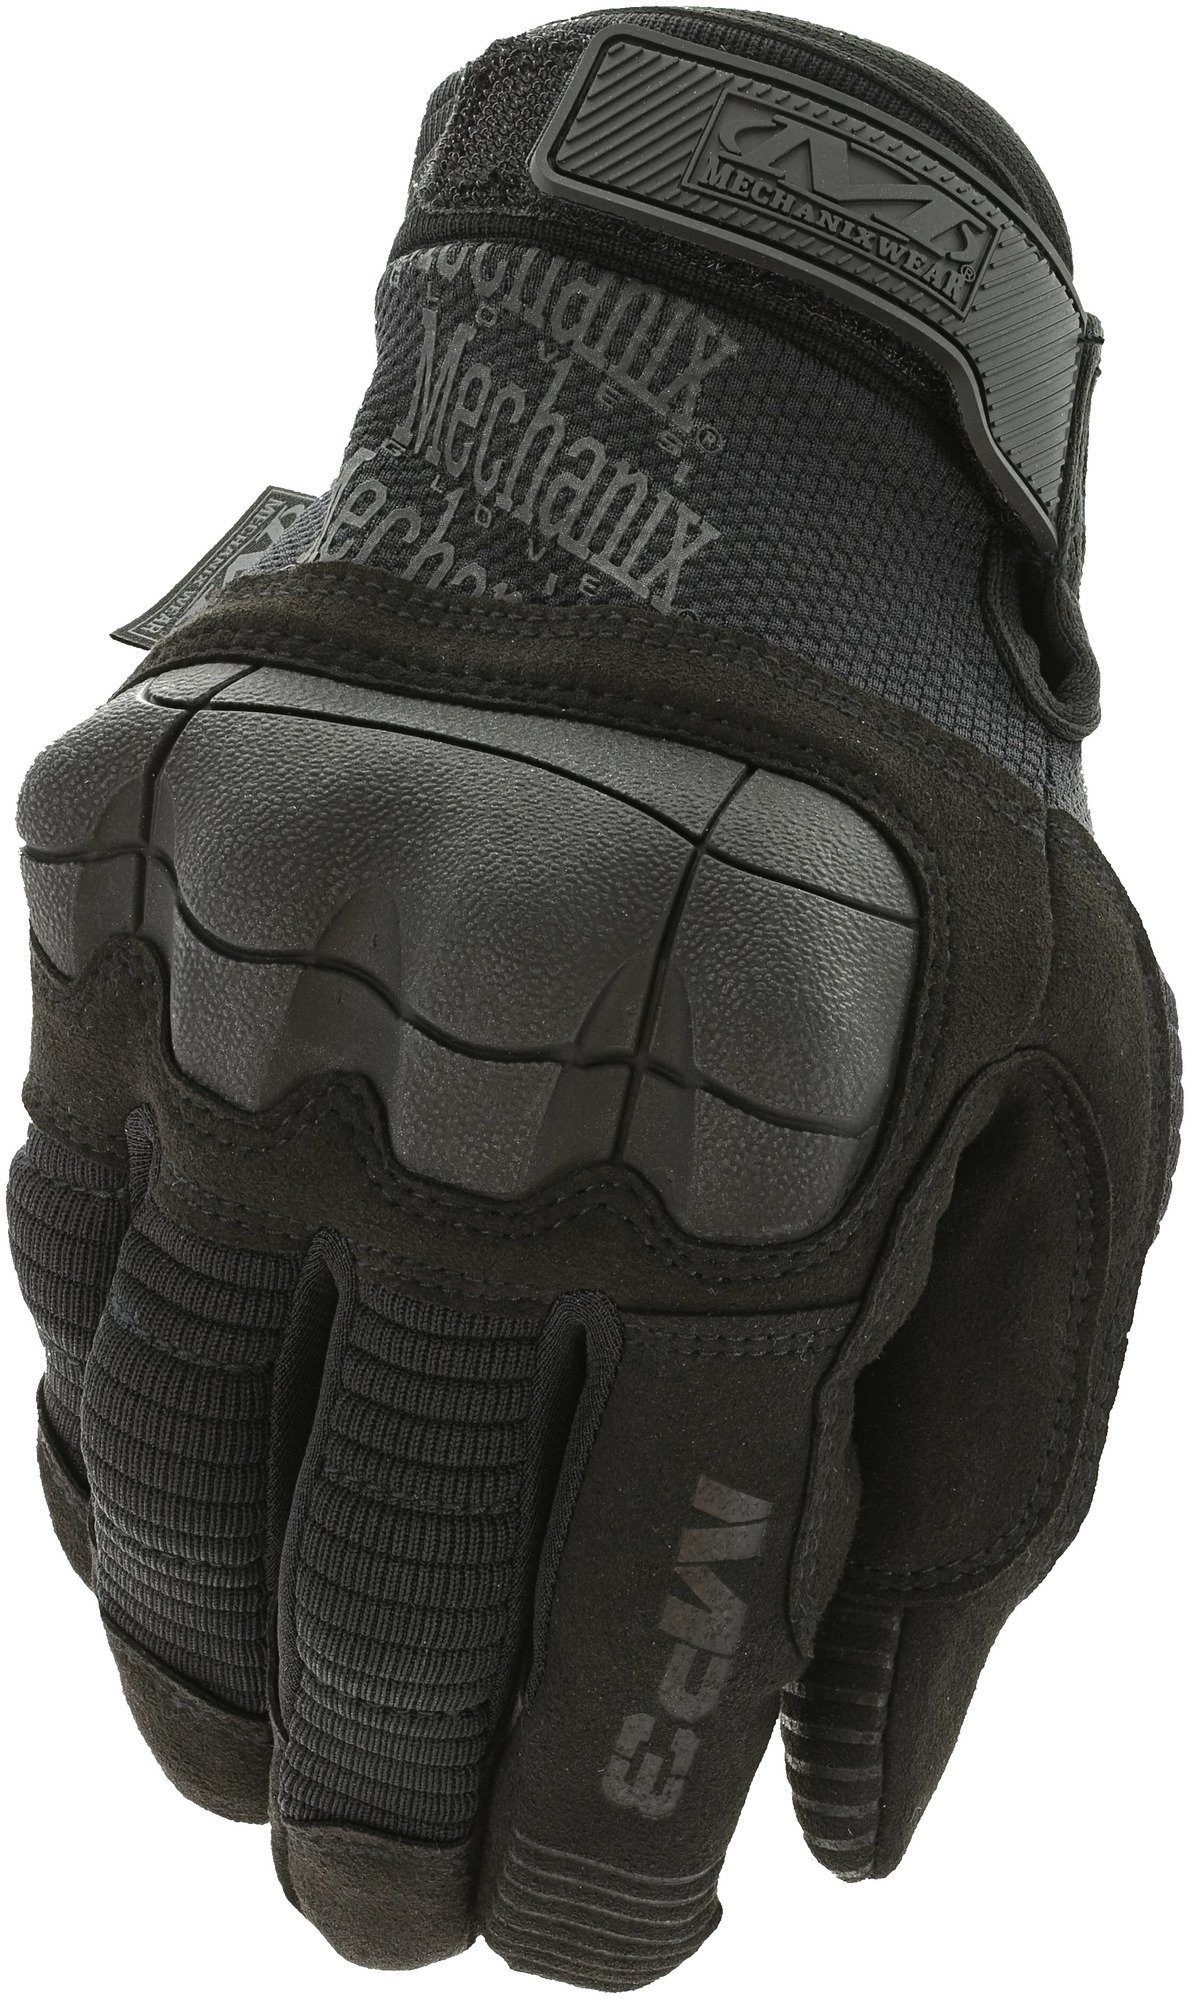 MECHANIX ochranné rukavice M-Pact 3 - Covert - čierne XL/11